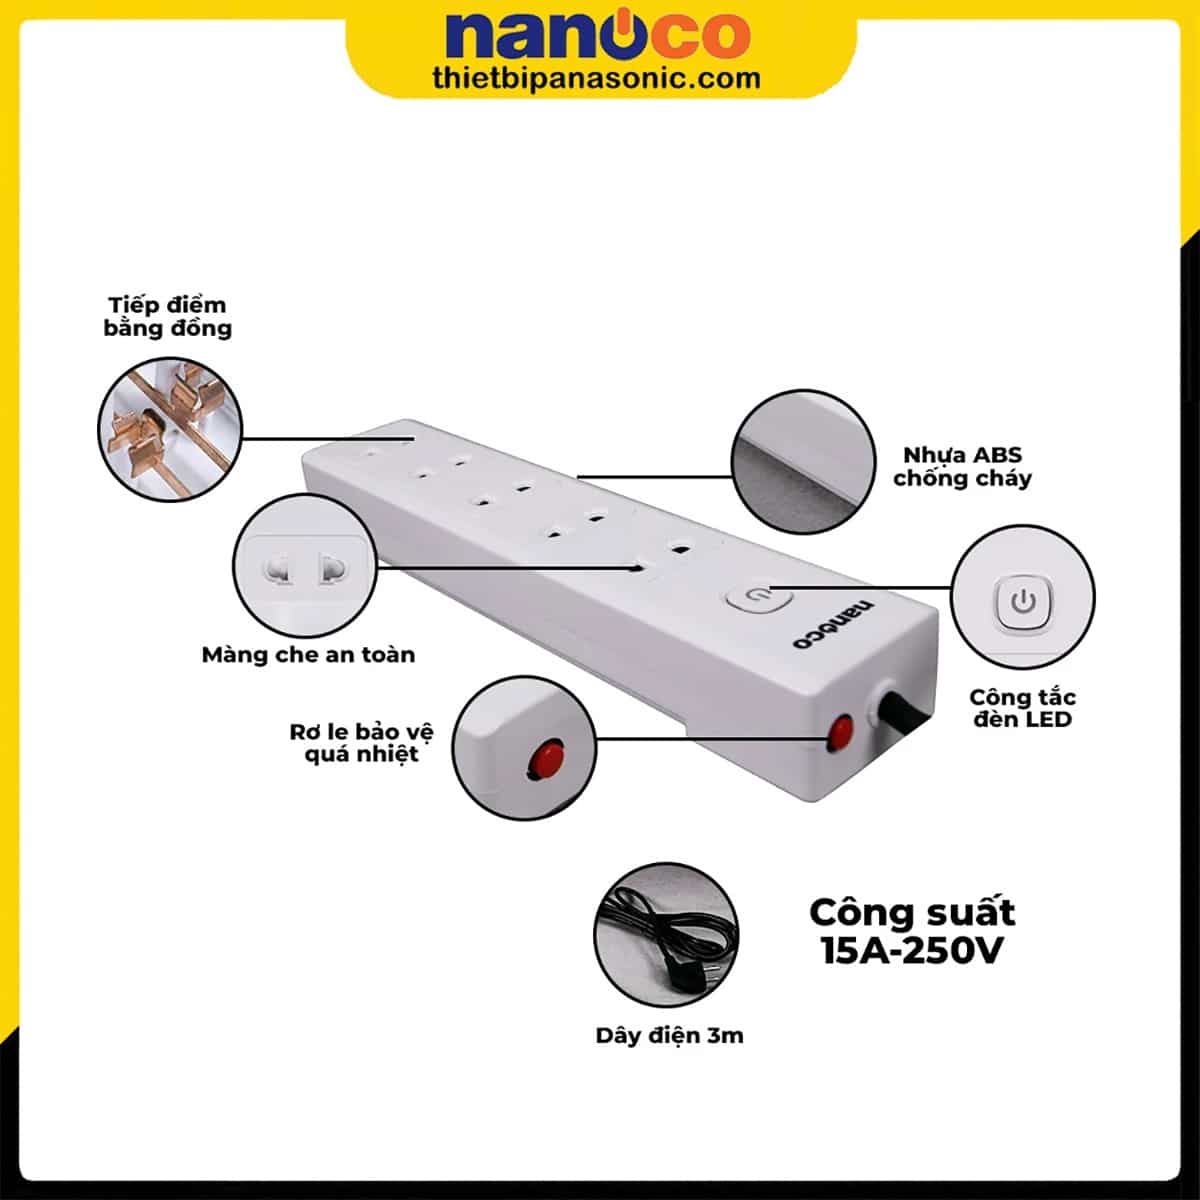 Đặc điểm nổi bật của Ổ cắm có dây Nanoco NES5215-3